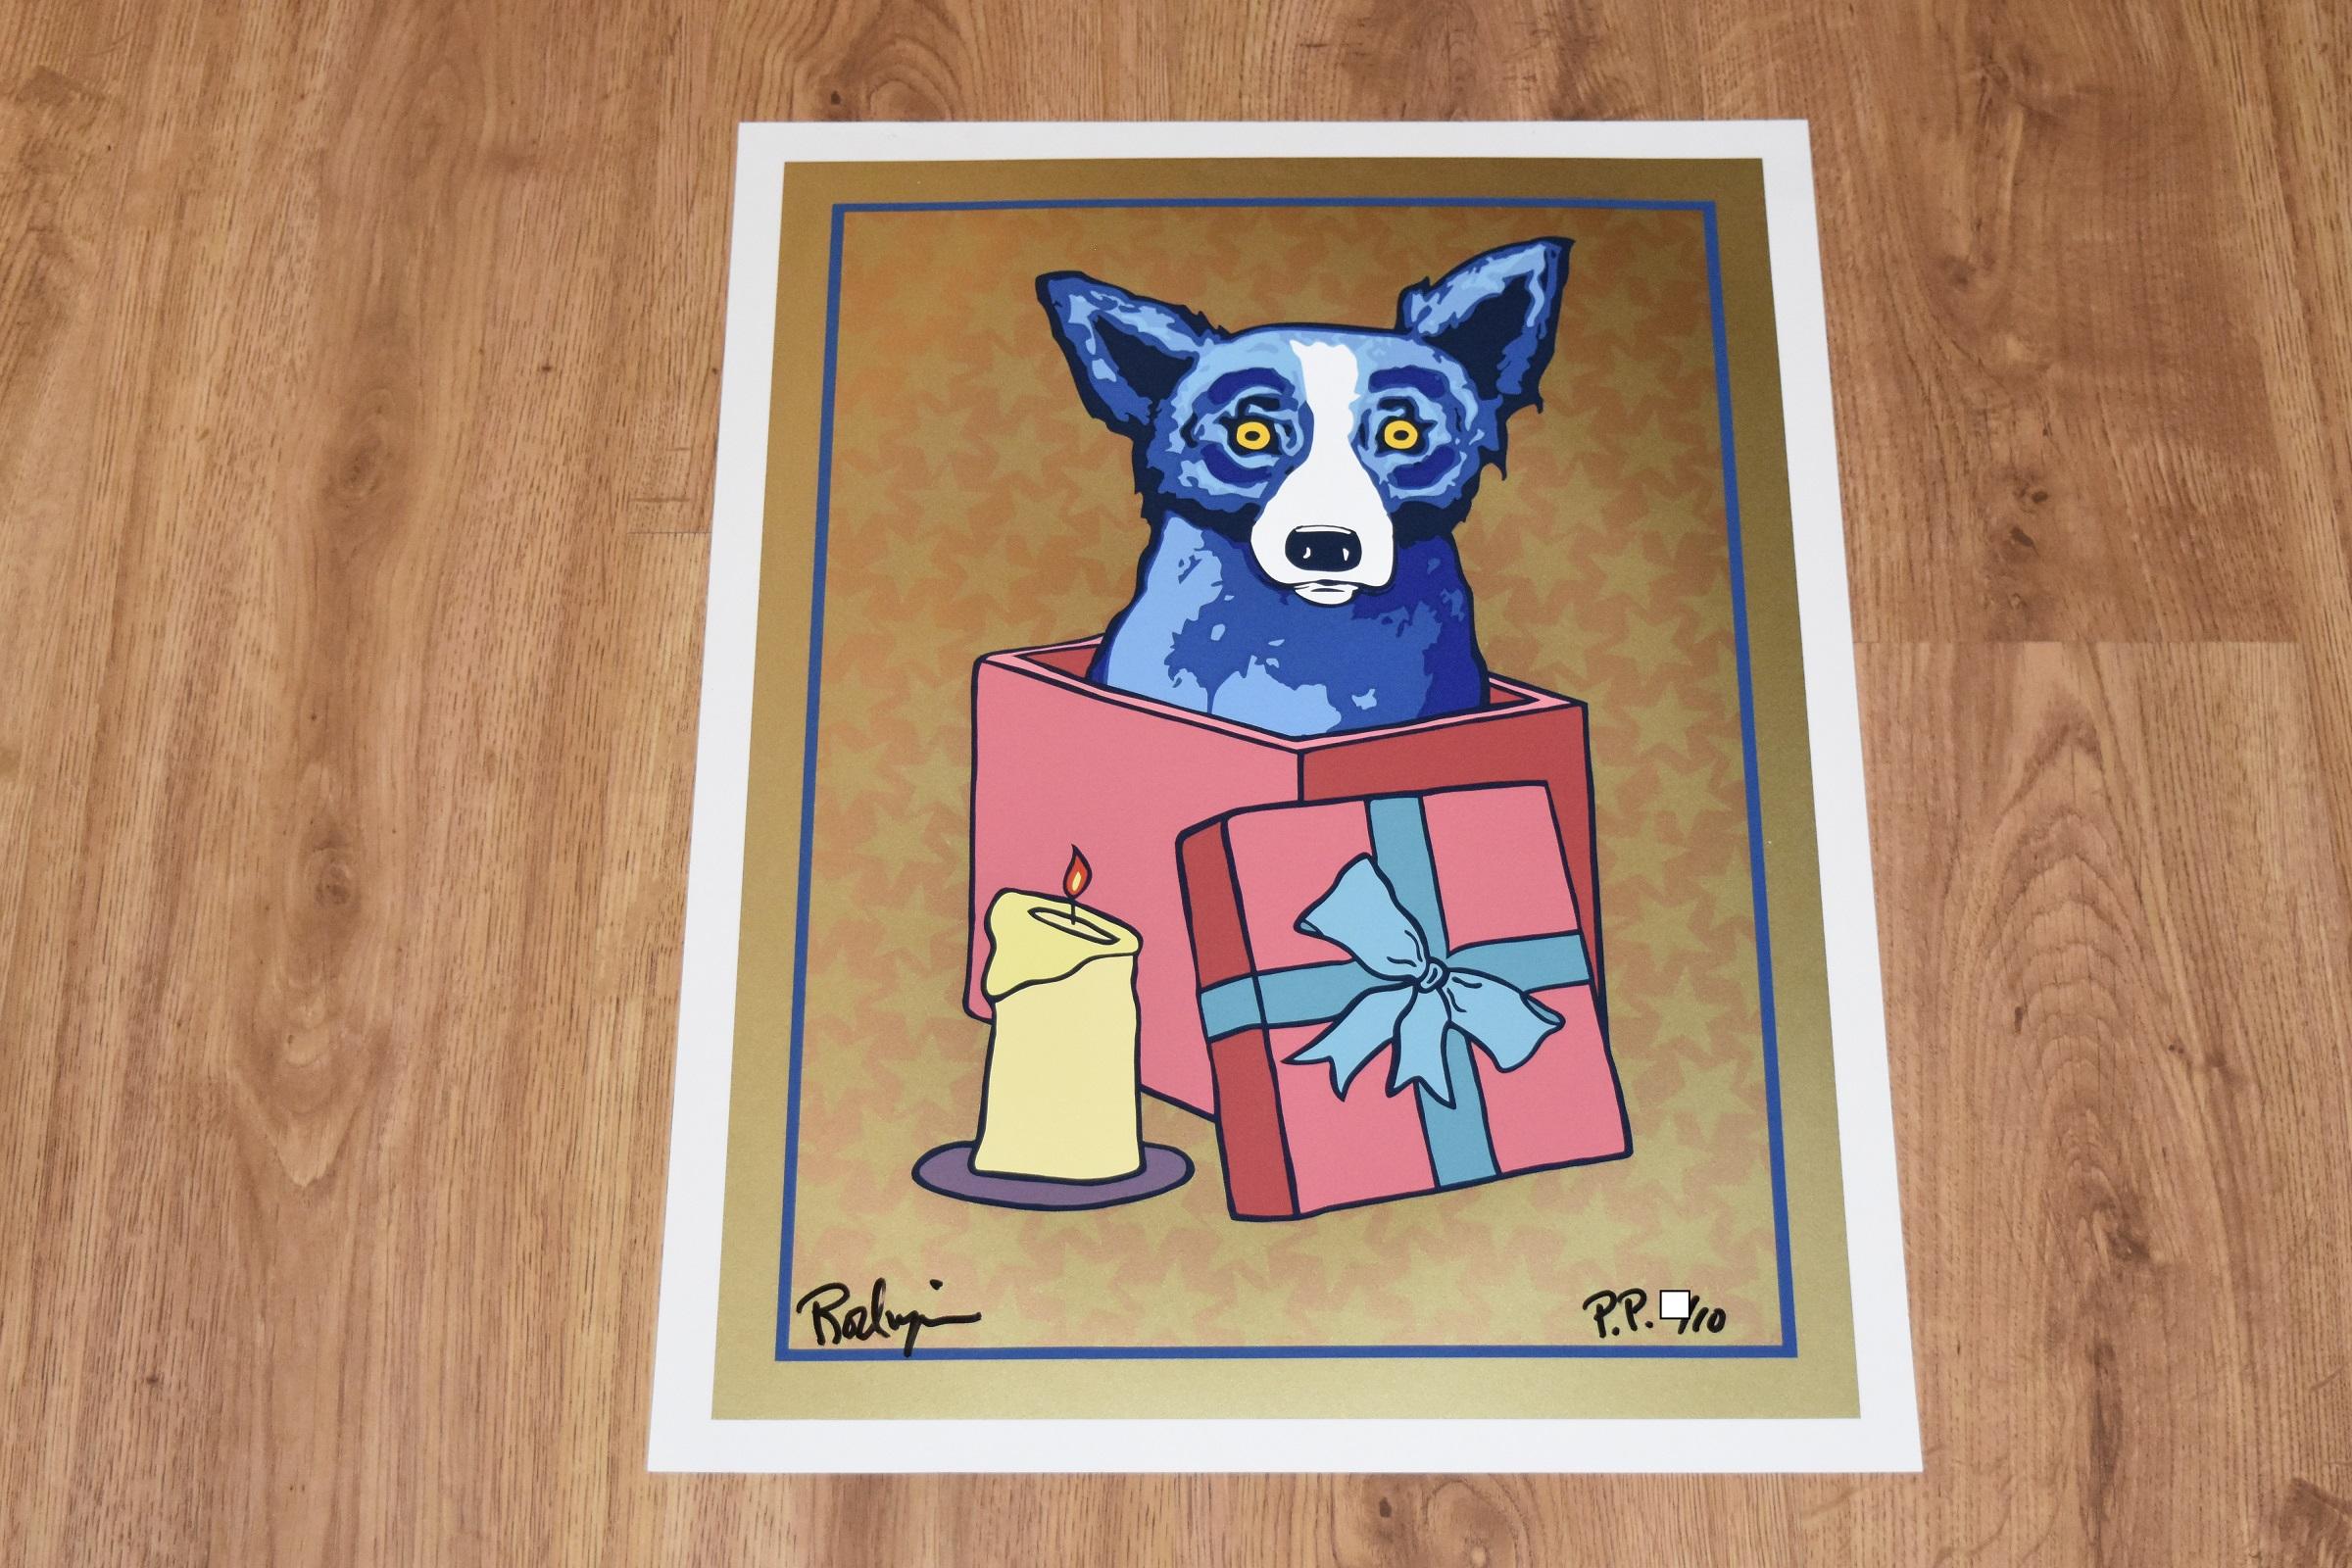 Jingle My Bells At Night - Gold - Signierter Siebdruck - Blauer Hund – Print von George Rodrigue